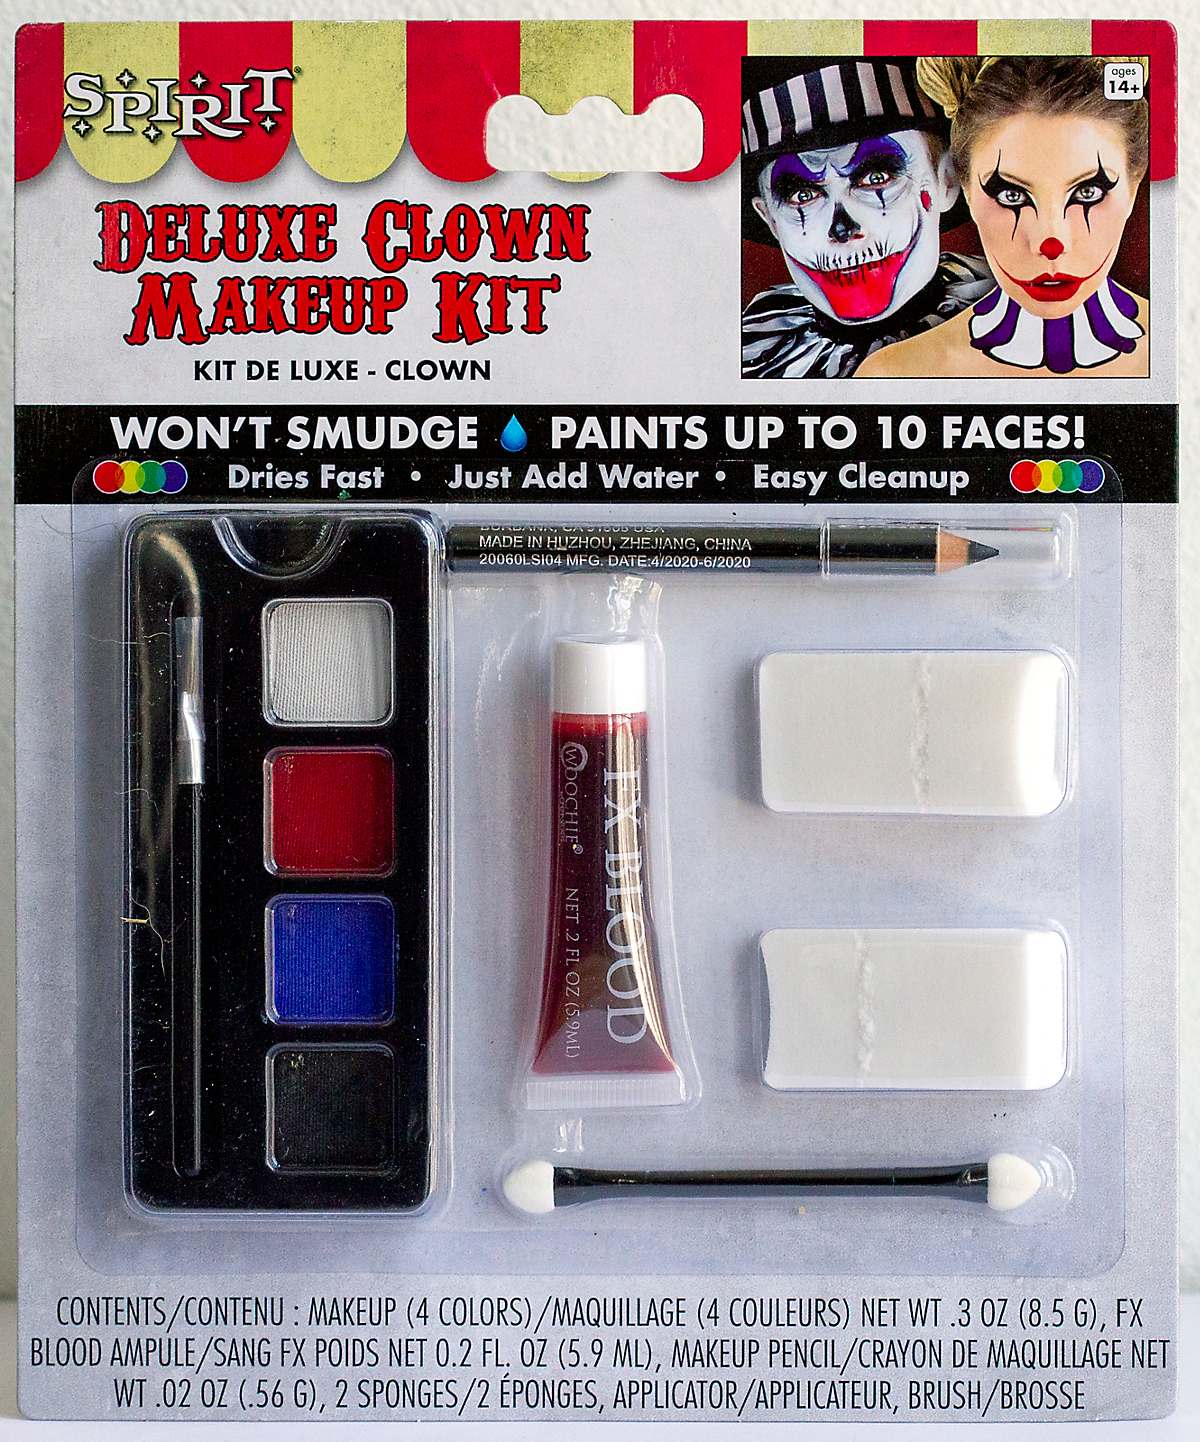 Deluxe clown makeup kit